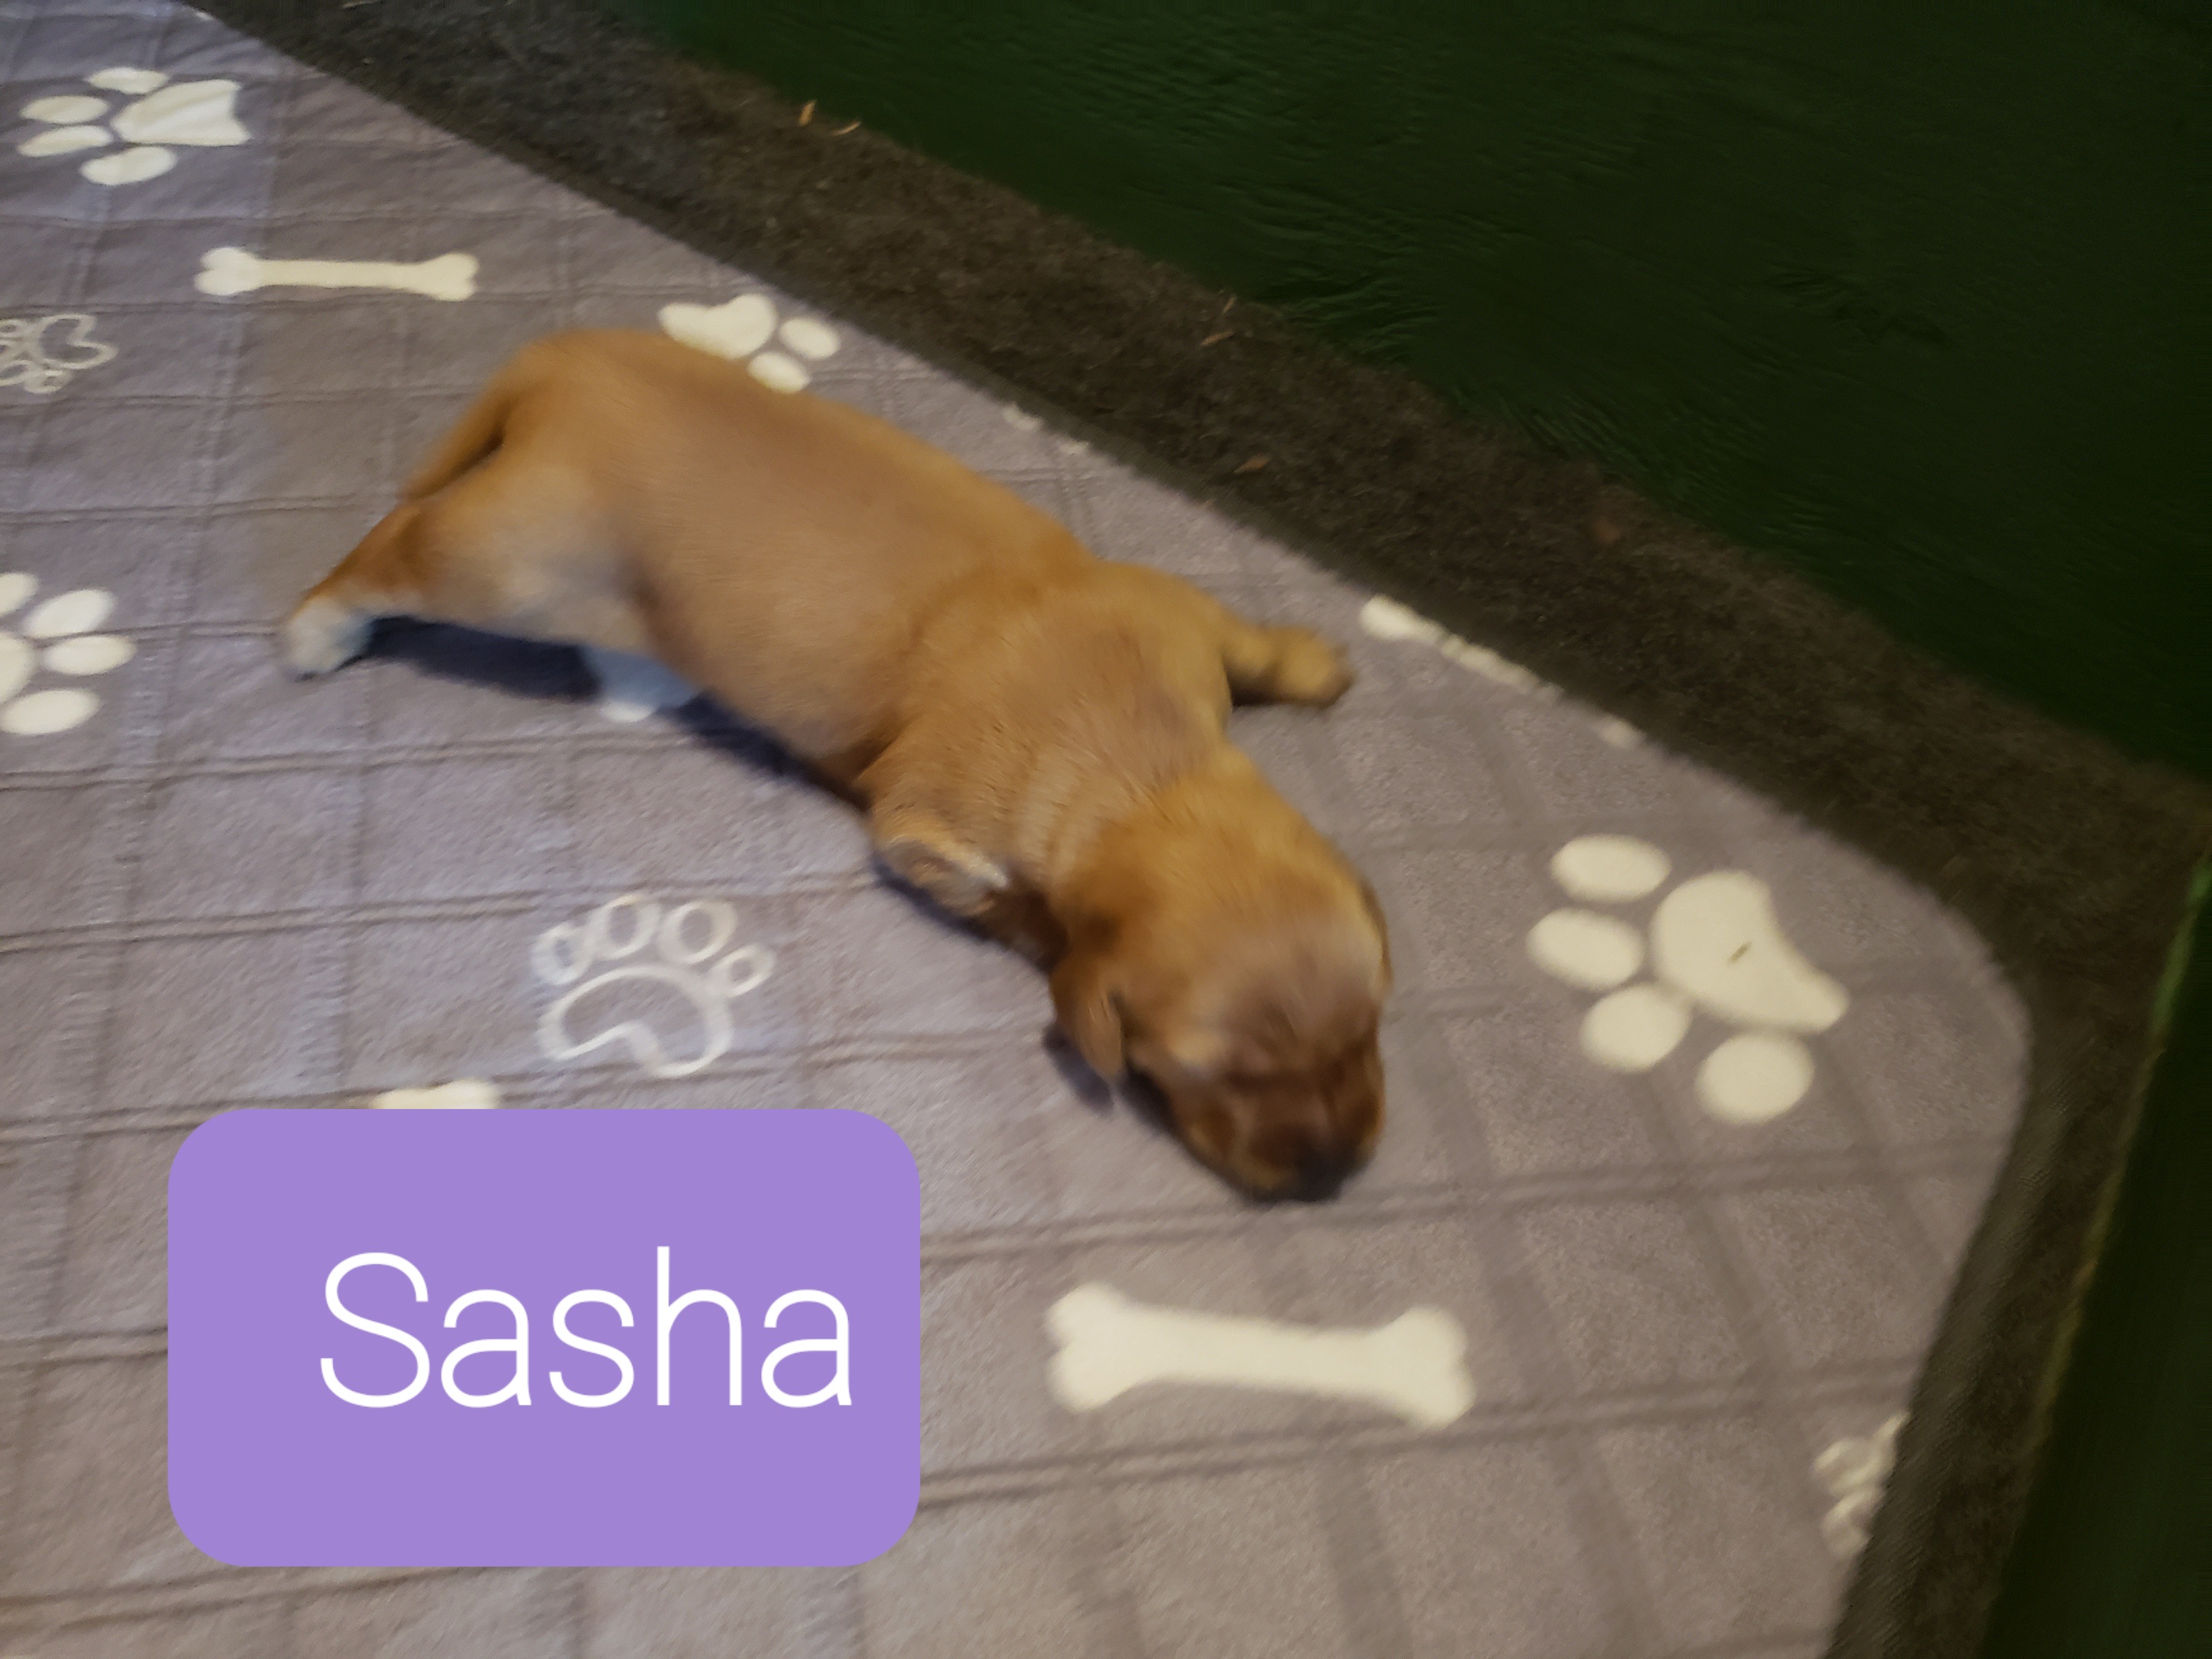 Sasha lying on the rug